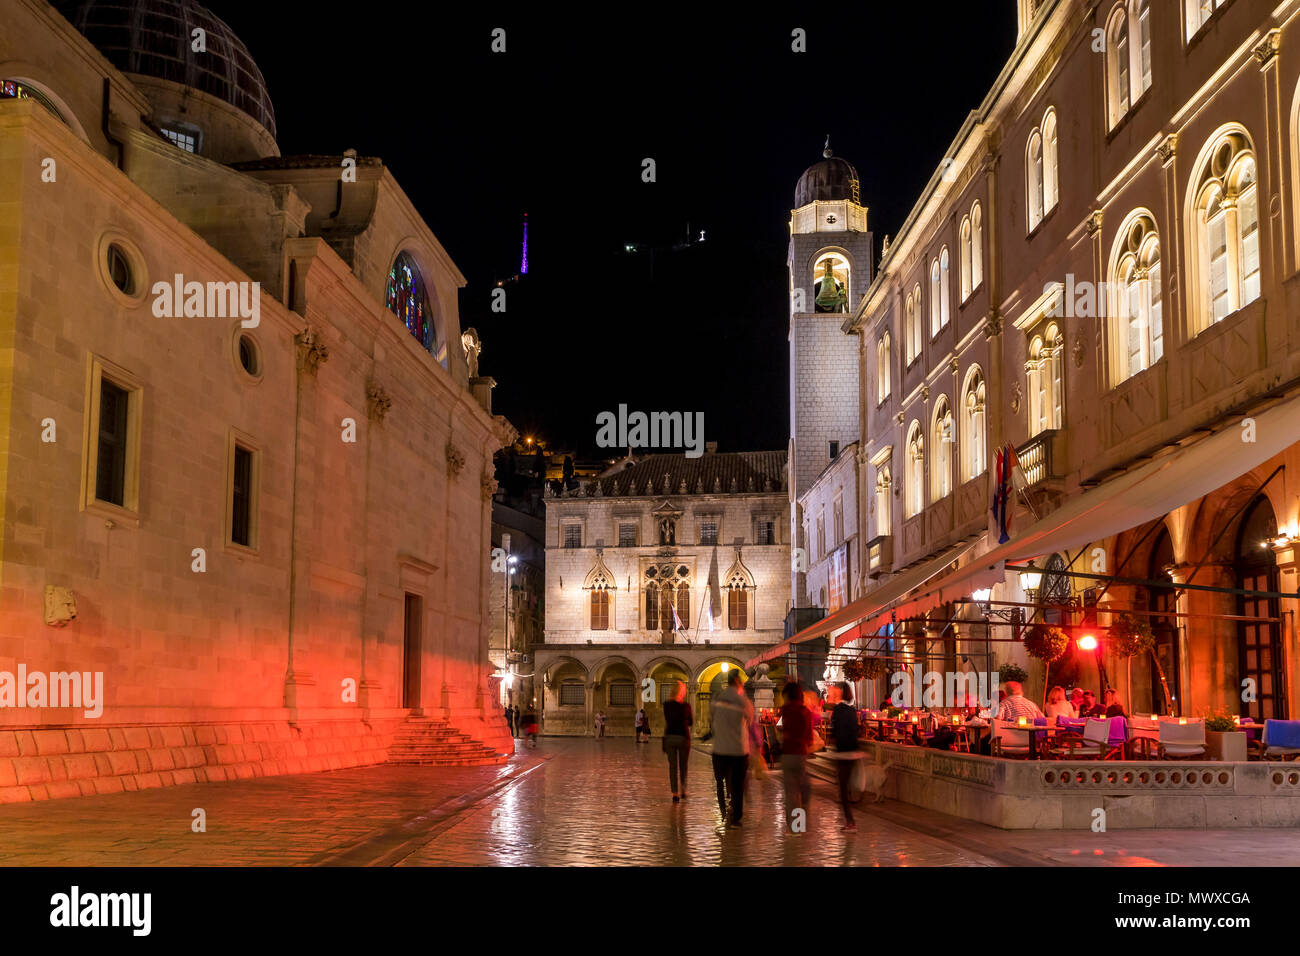 Photo de nuit de la tour Bell, Stradun de Dubrovnik, Croatie, Europe Banque D'Images